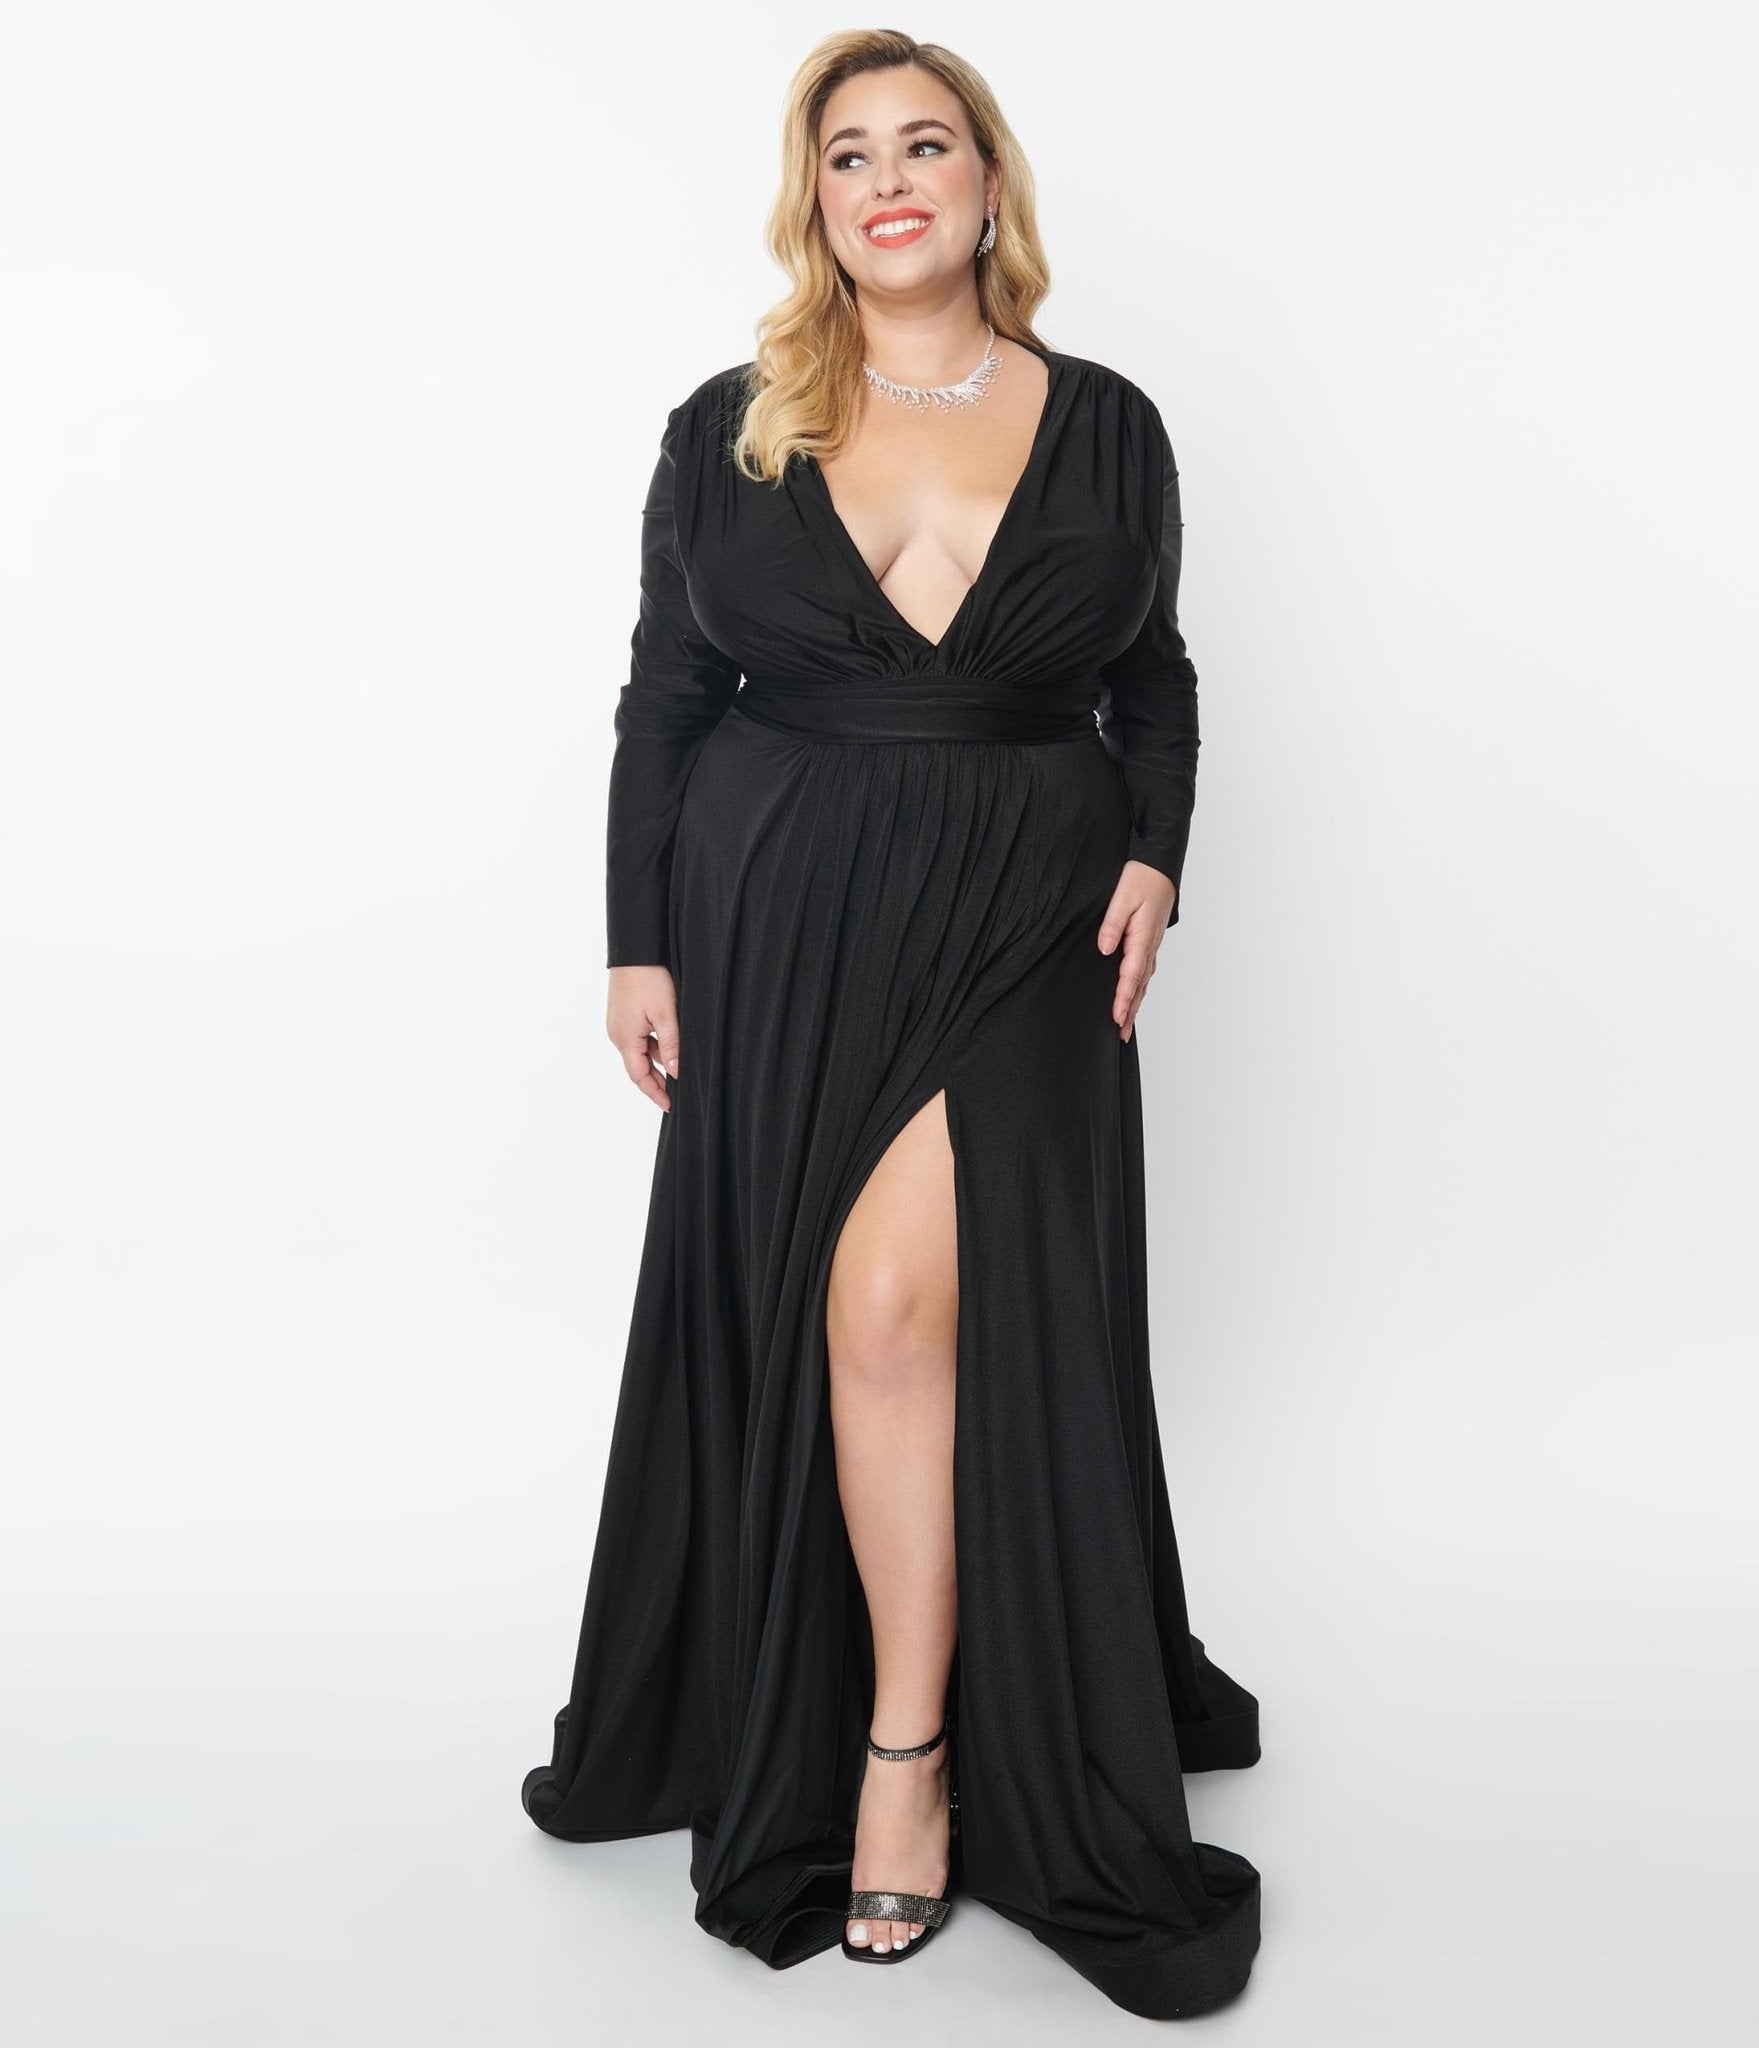 AMANI Long Sleeve Sequin Gown - Black – Noodz Boutique